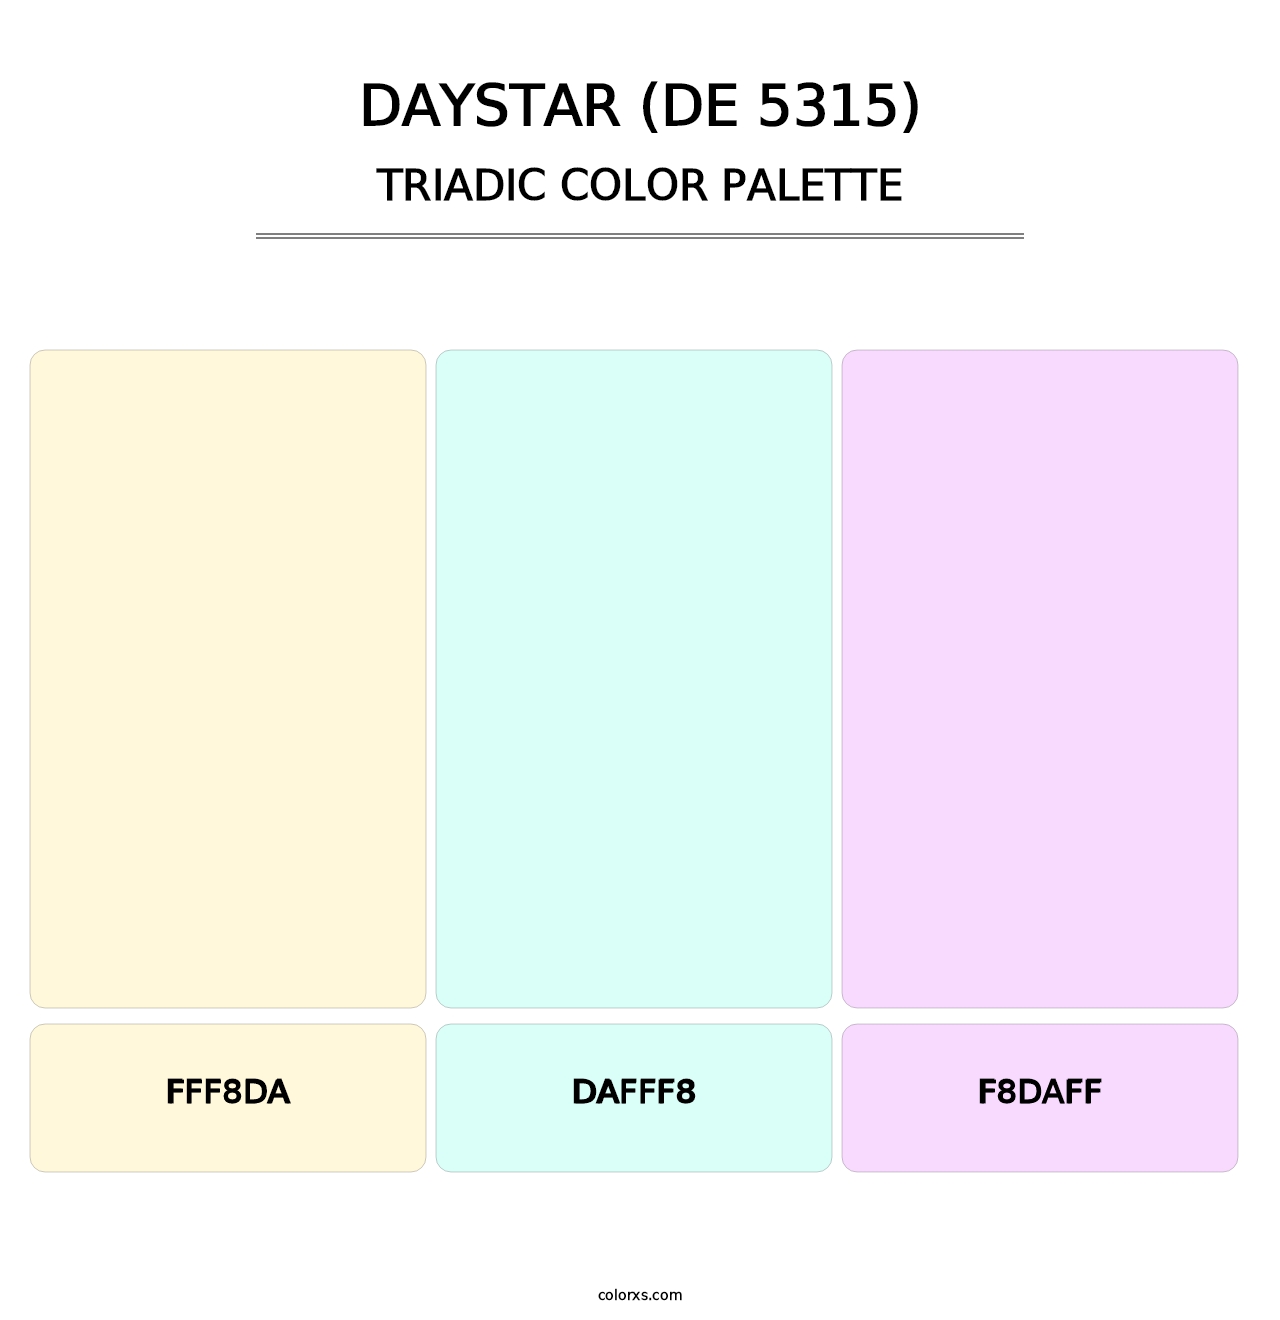 Daystar (DE 5315) - Triadic Color Palette